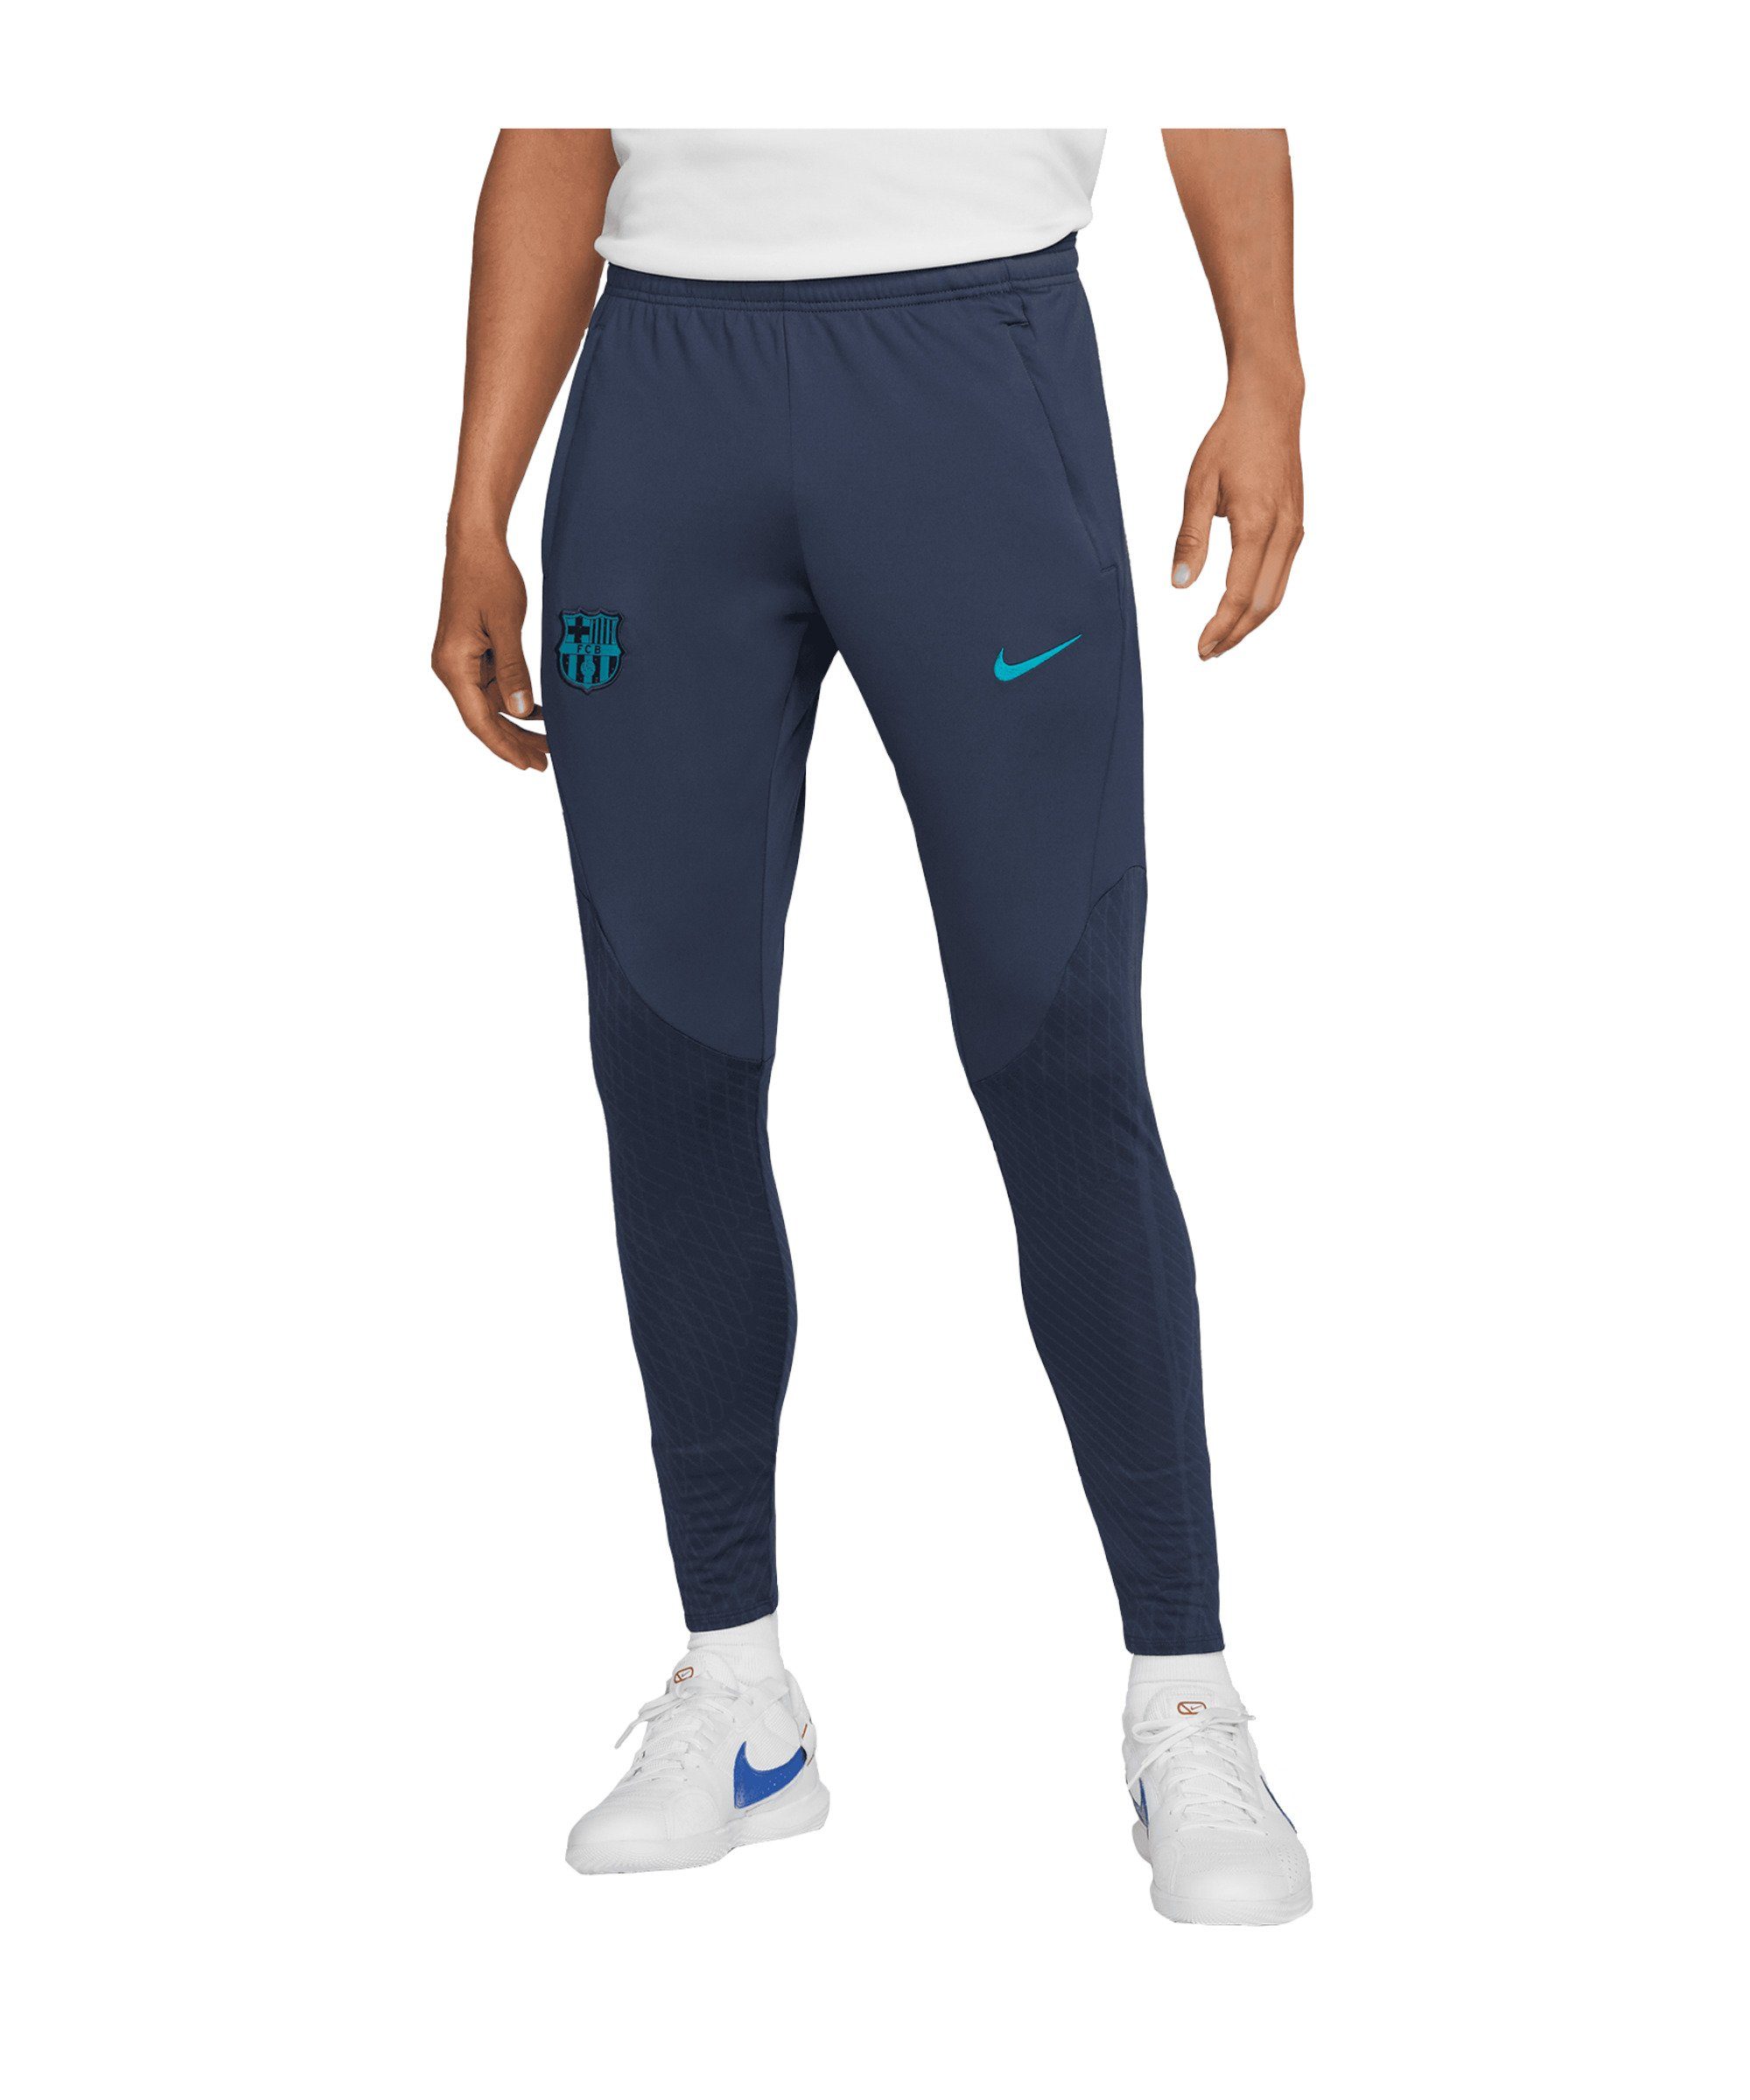 Nike Jogginghosen für Herren kaufen » Nike Jogger | OTTO